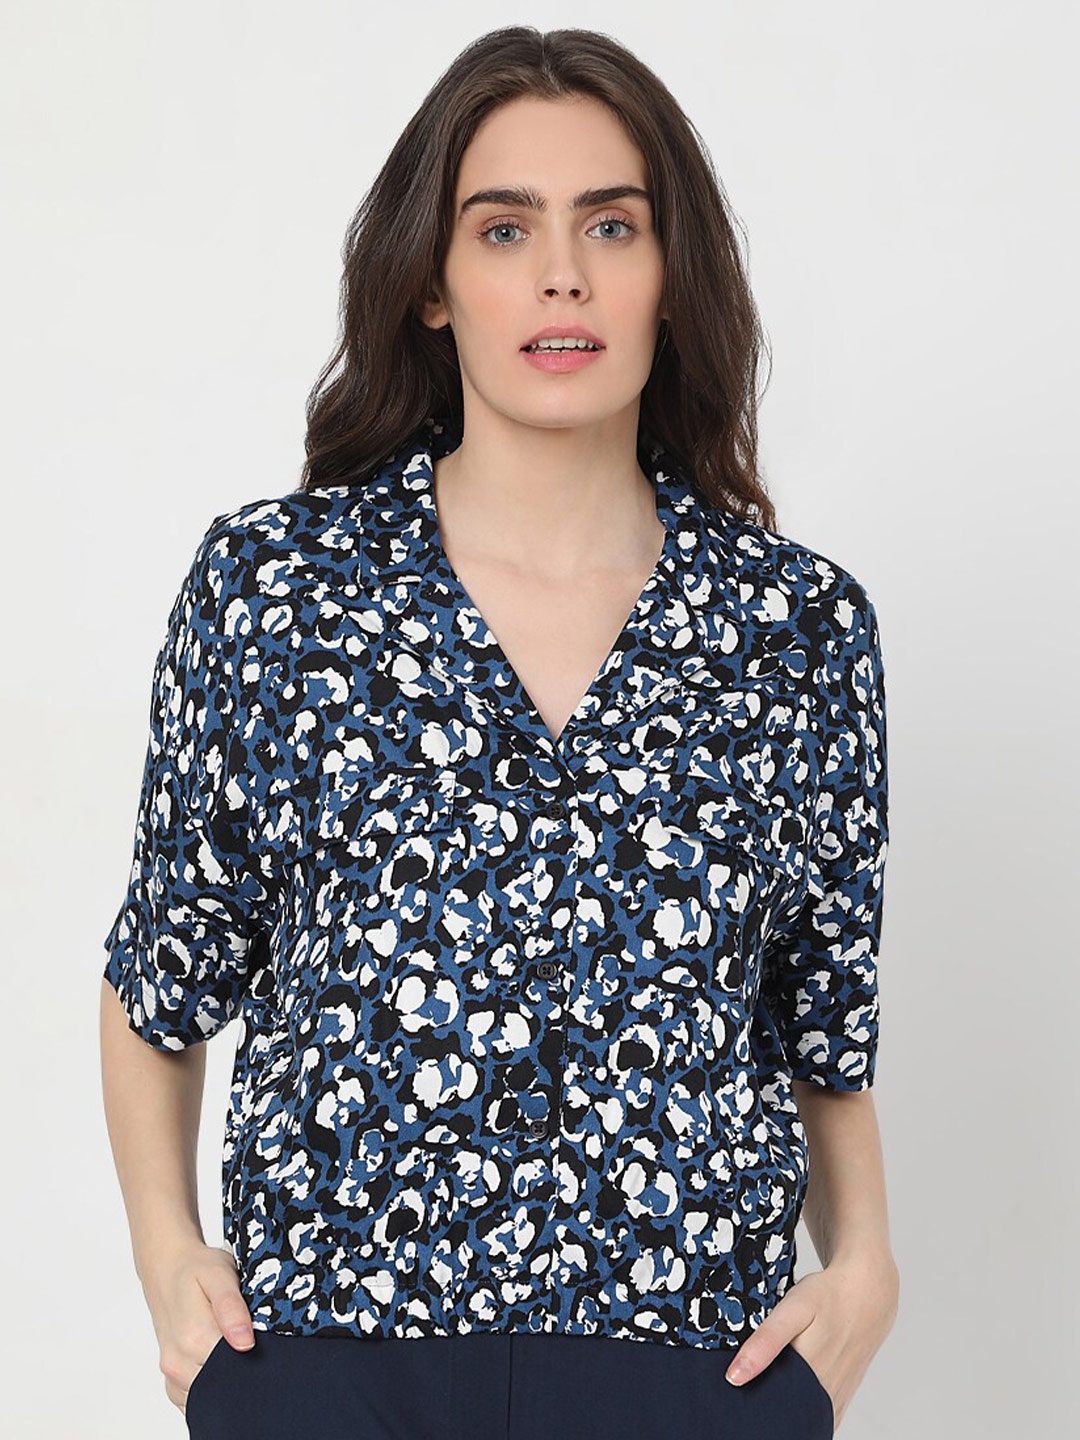 

Vero Moda Blue Floral Shirt Style Top